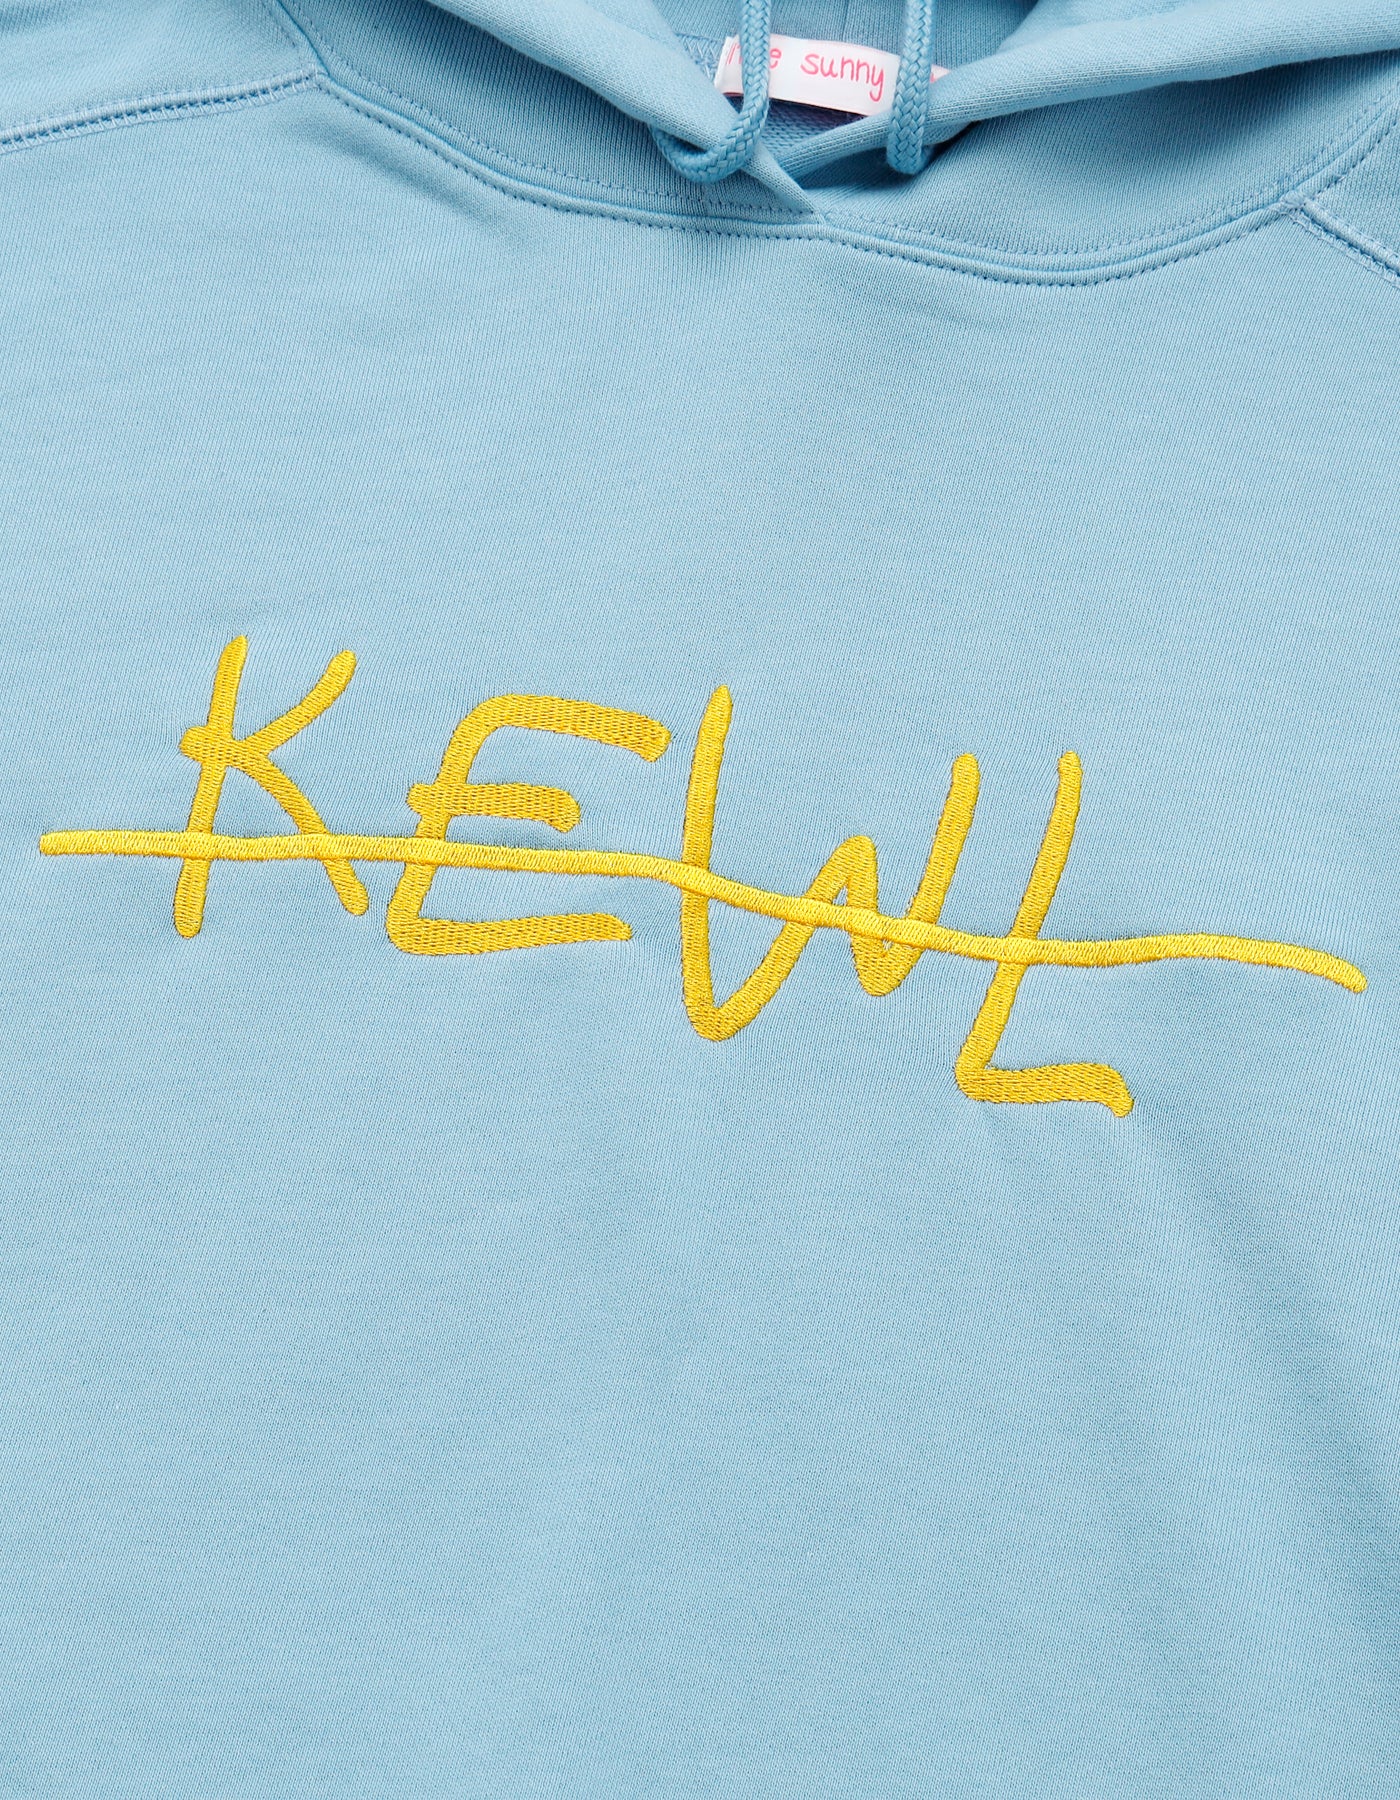 Kewi hoodie / BLUE